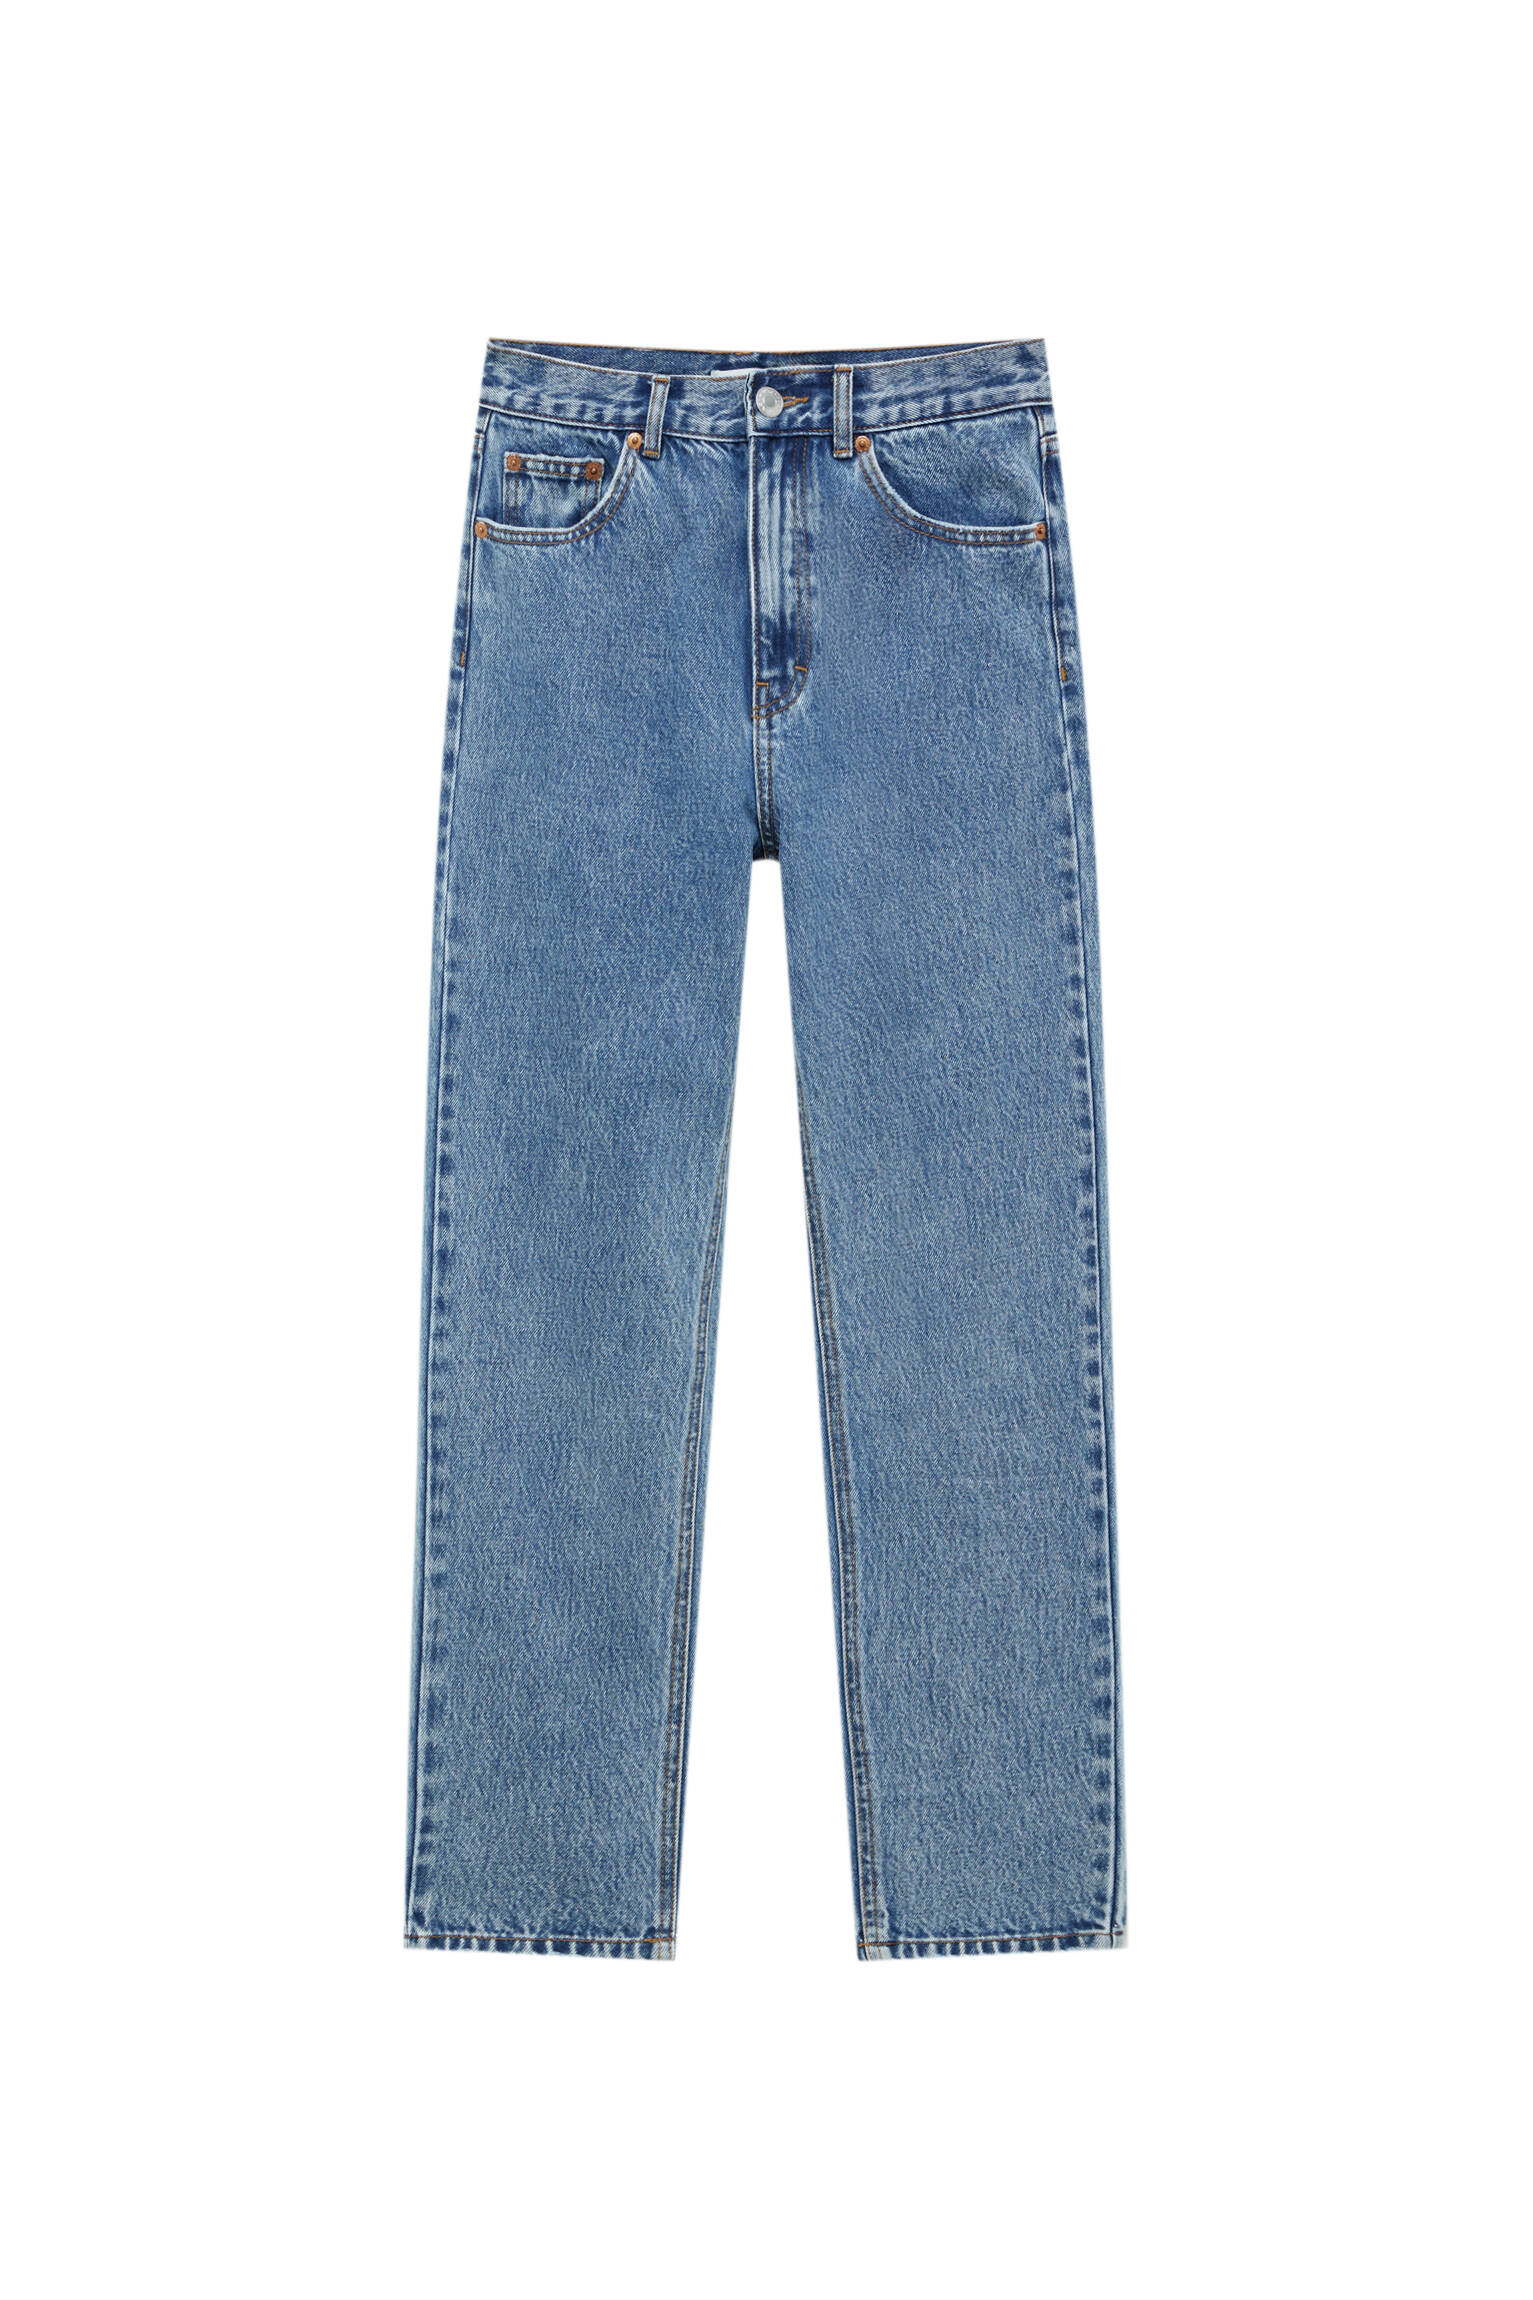 Базовые джинсы mom fit - органический хлопок (не менее 50%) ВЫЦВЕТШИЙ СИНИЙ Pull & Bear